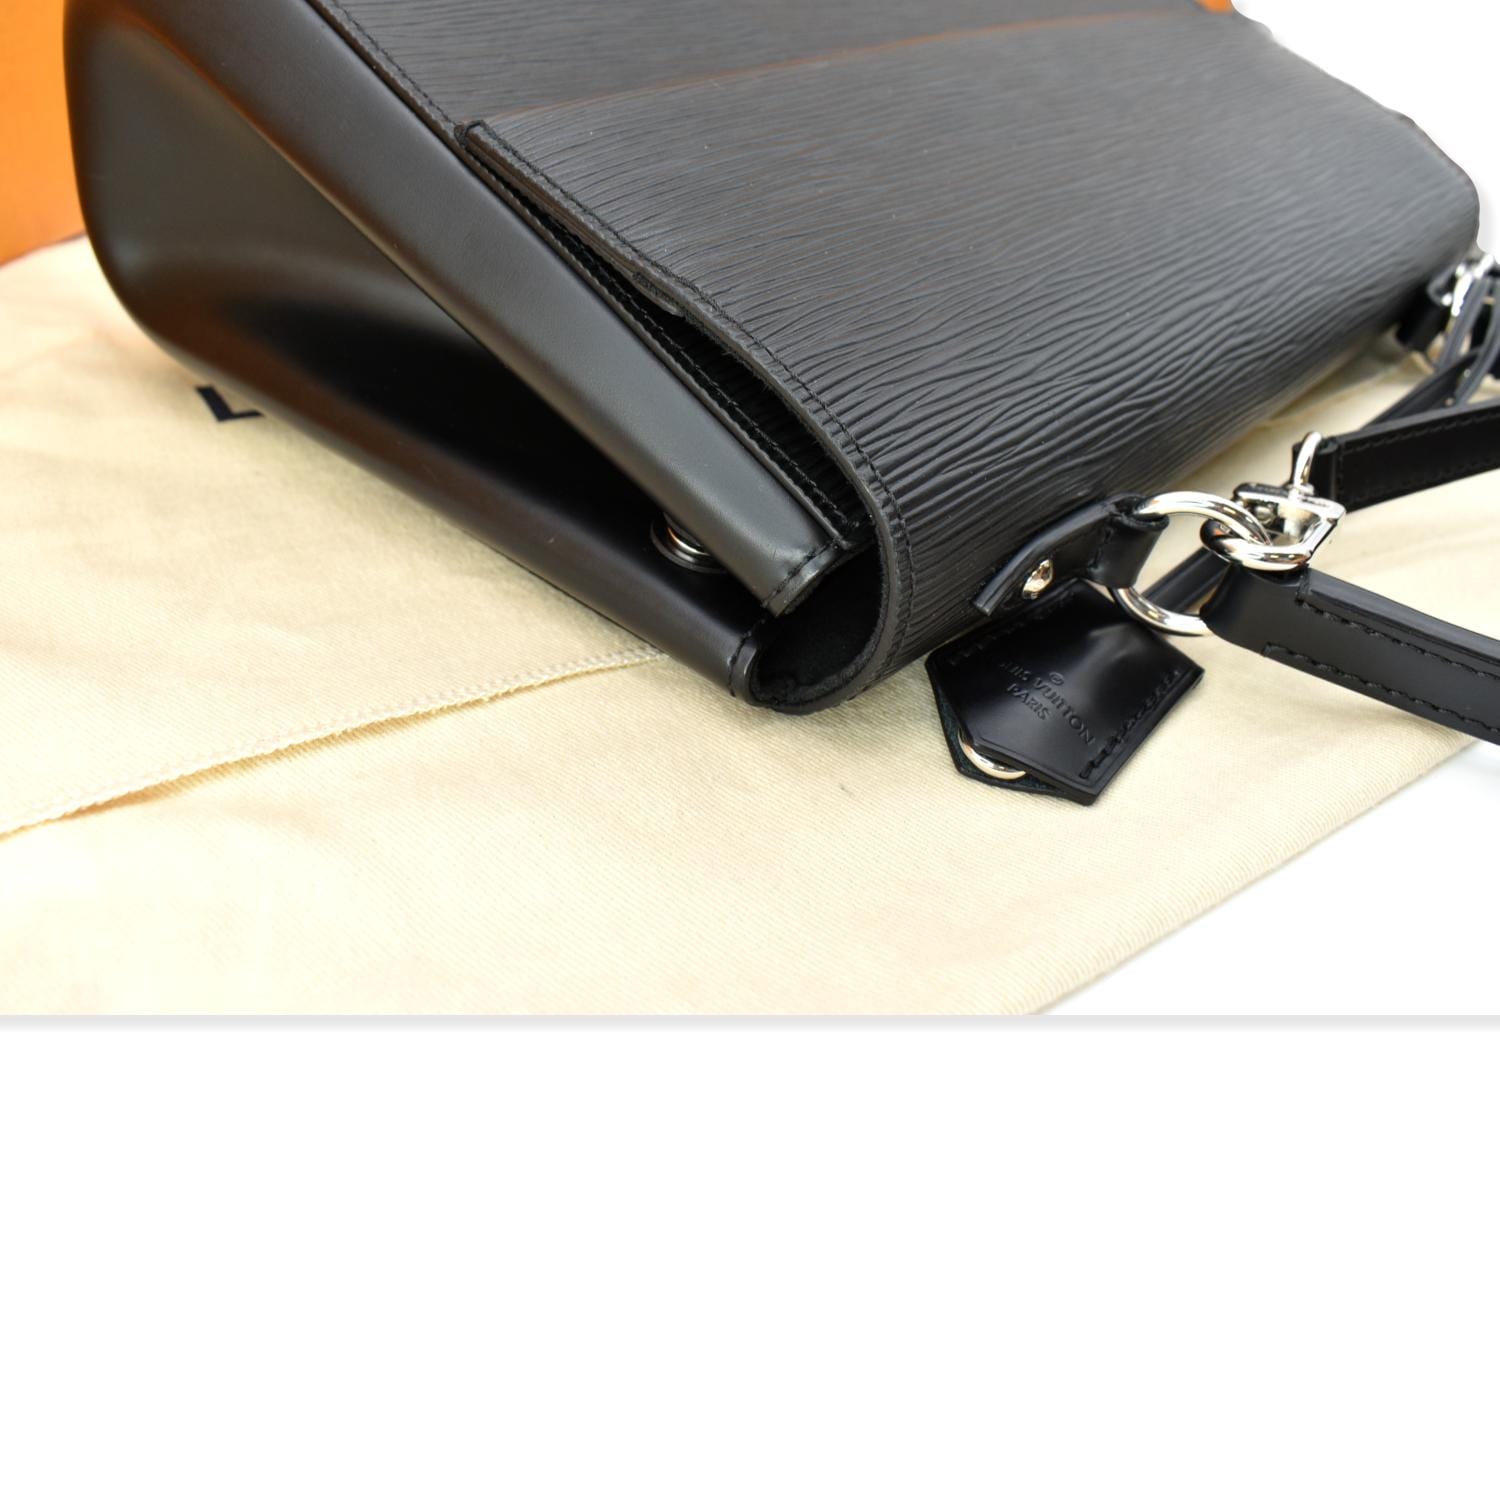 Louis Vuitton Ombre Bag Epi Leather Black